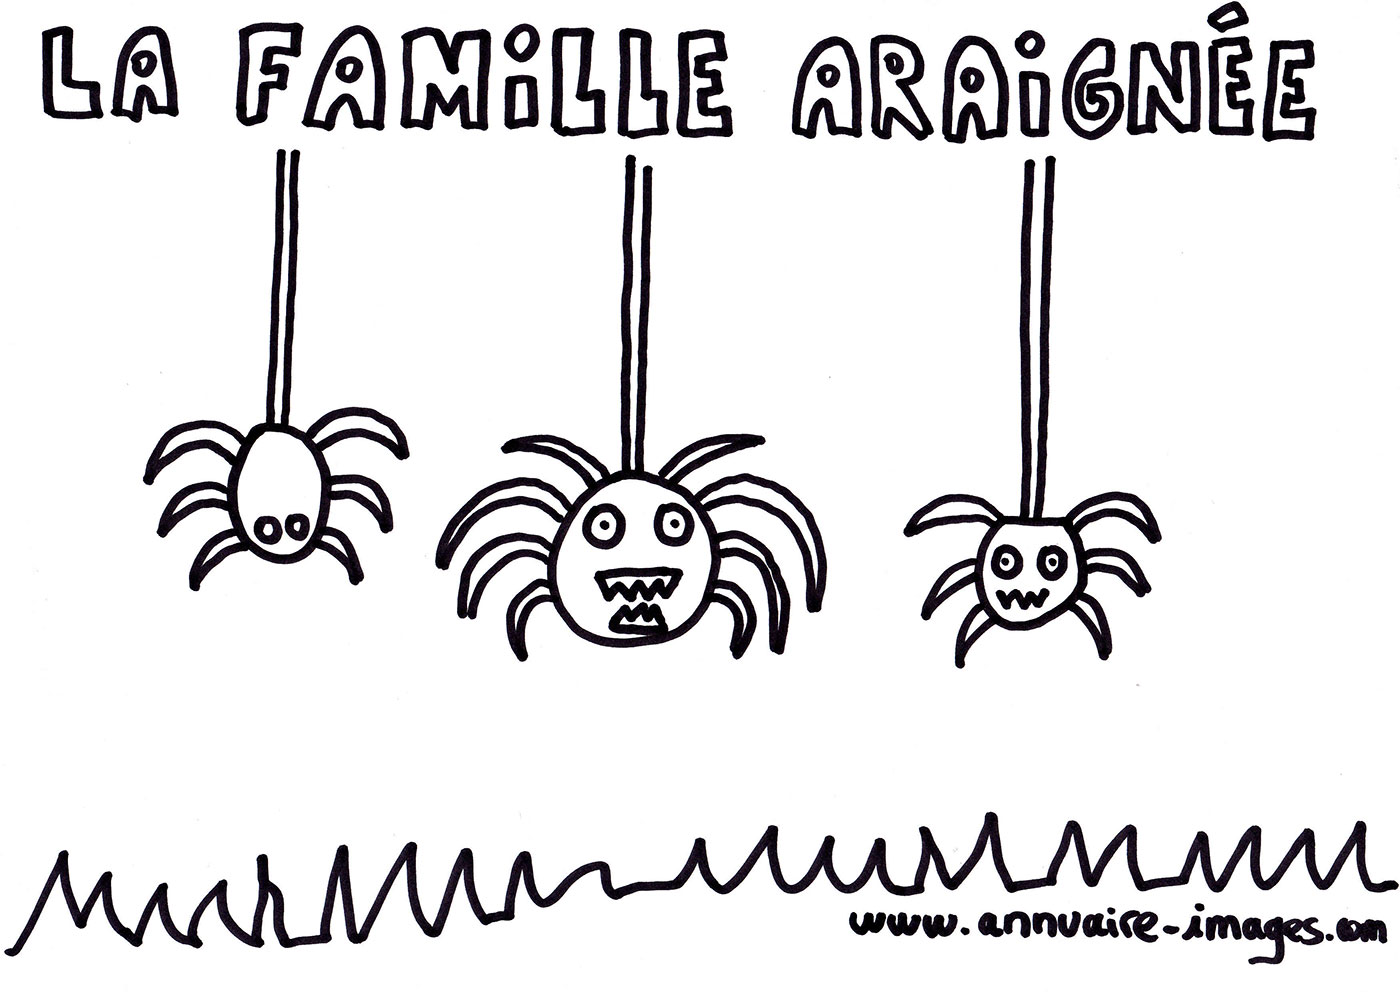 Famille araignée